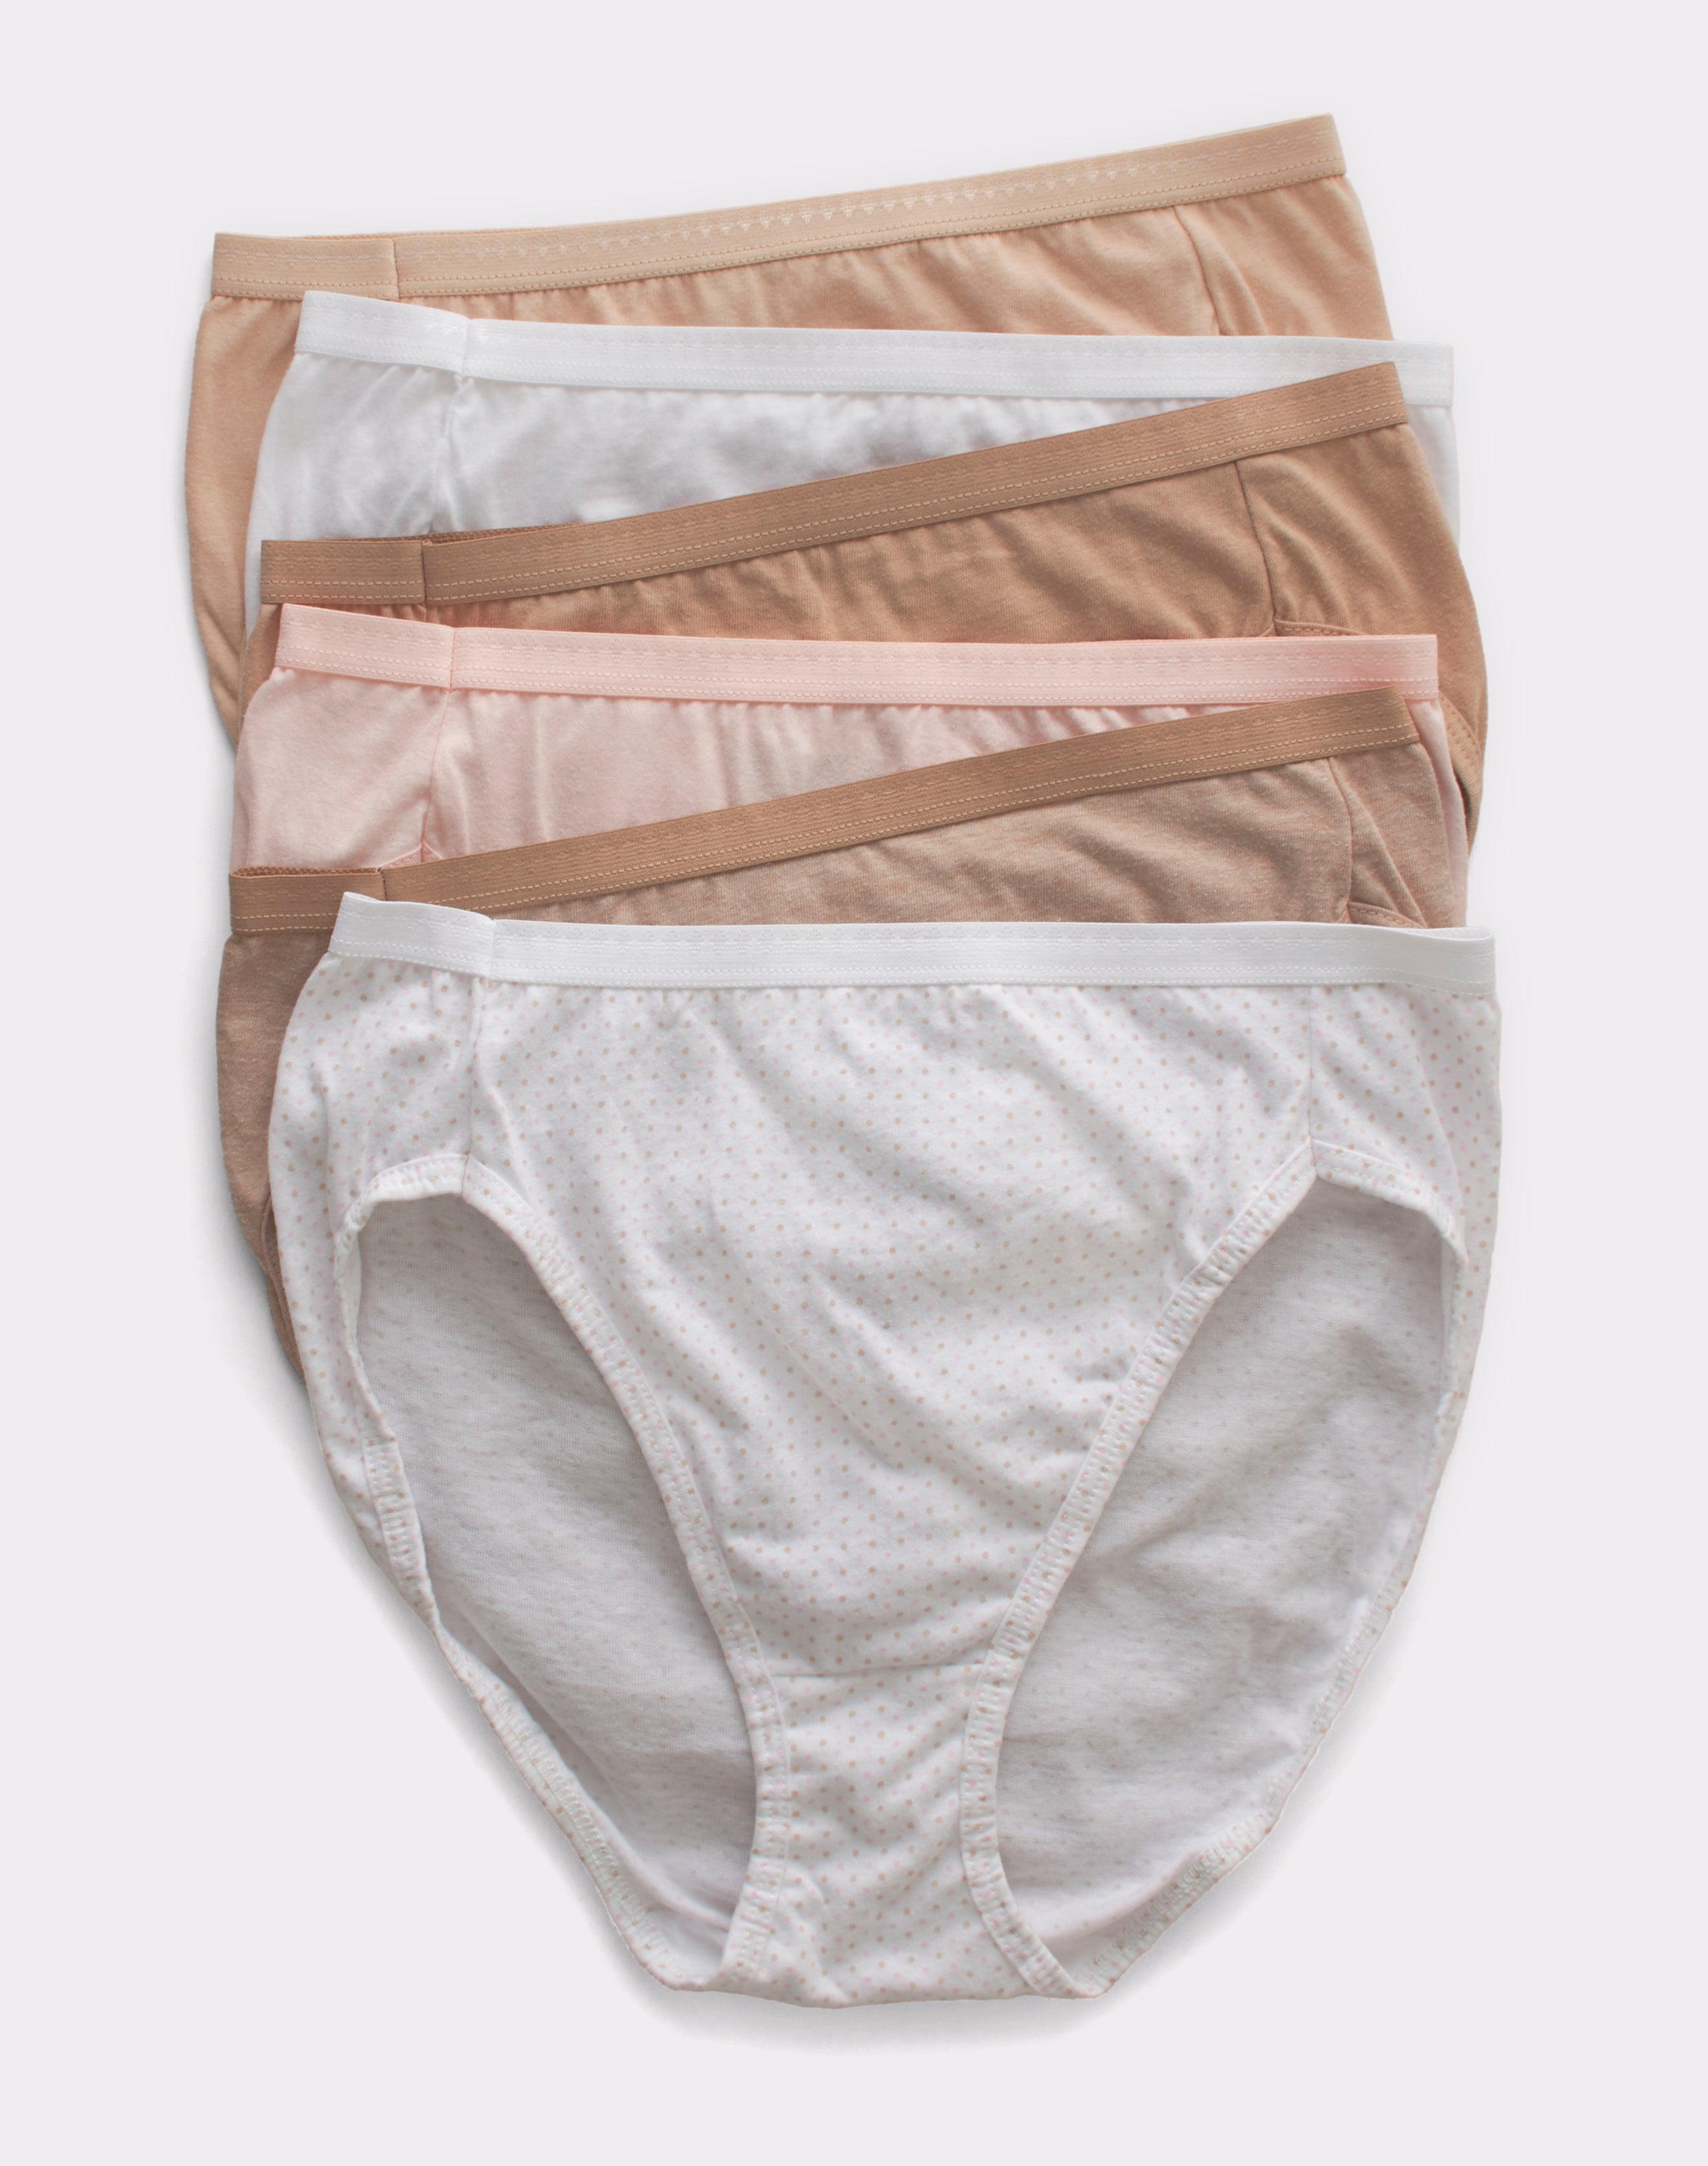 Hanes® Ultimate Breathable Cotton Tagless® Brief Underwear, 8